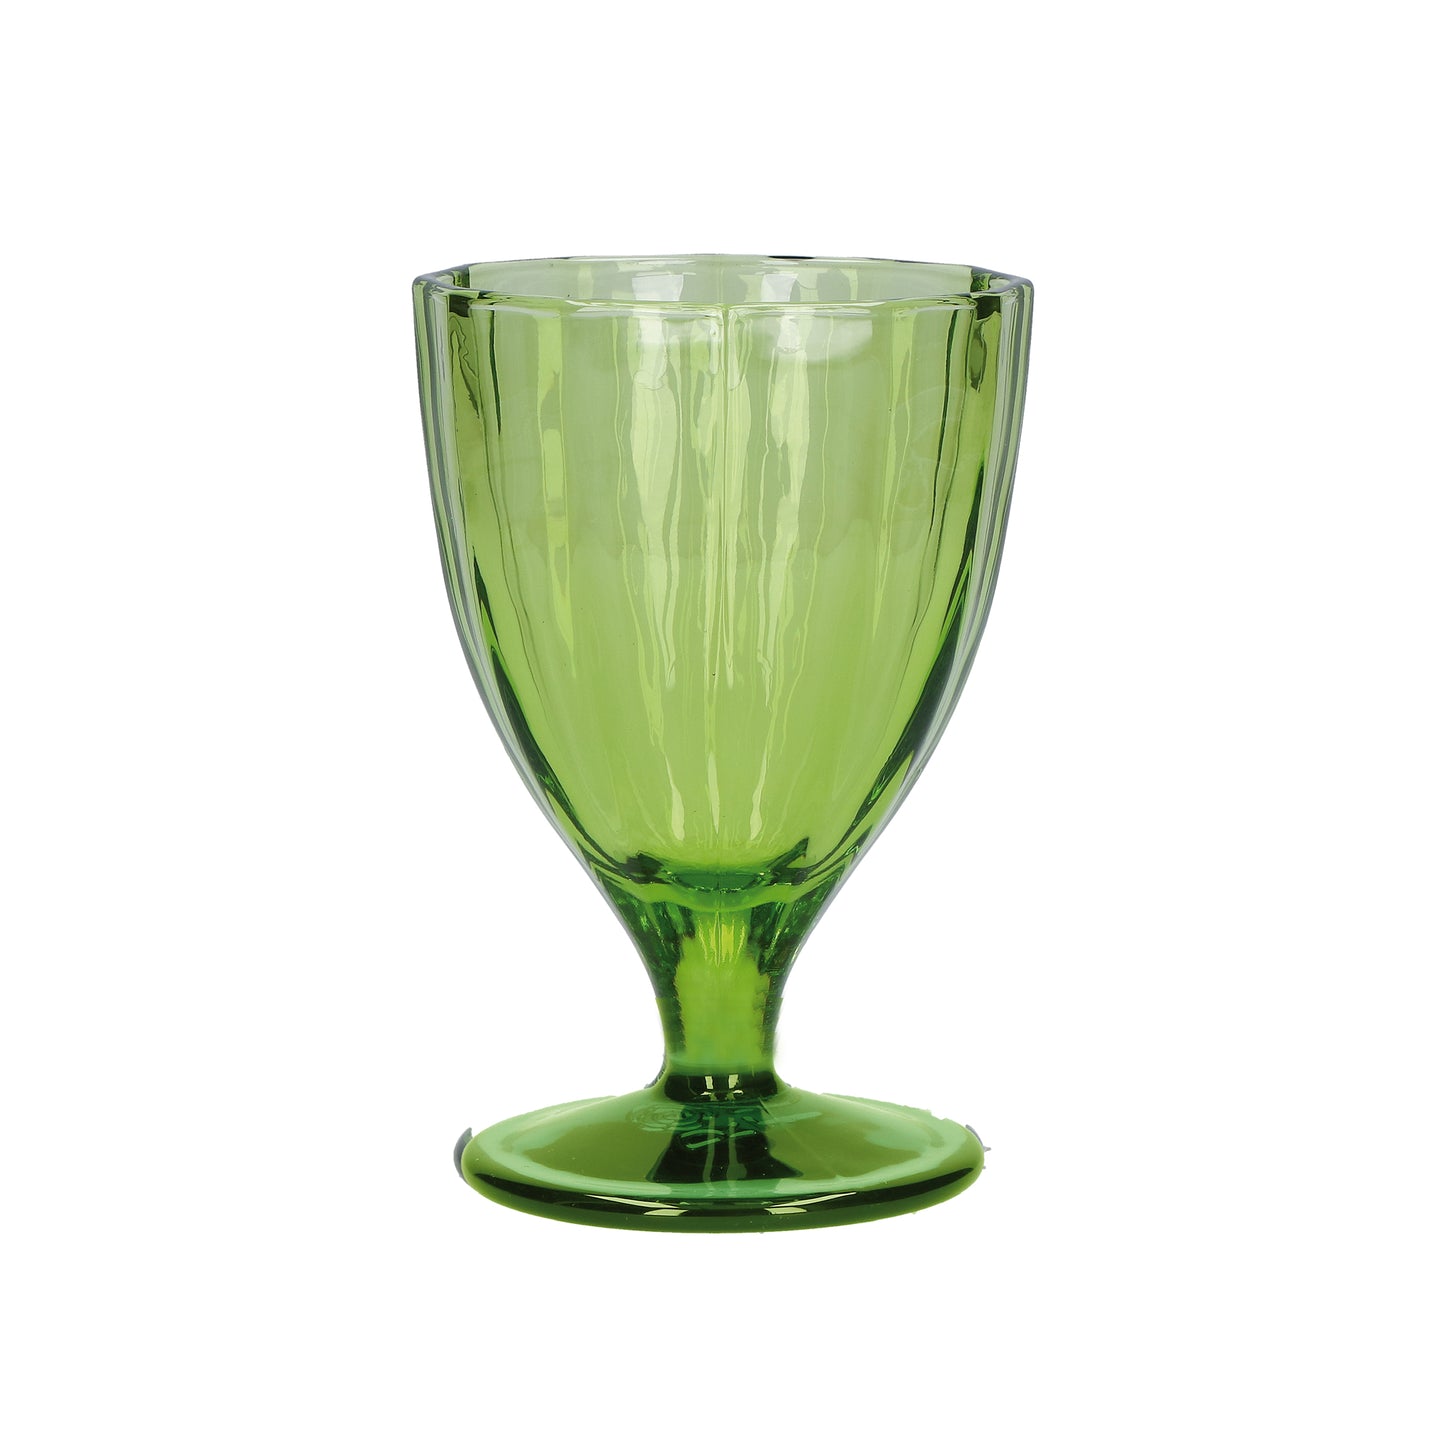 Confezione 6 calici in vetro verde prato cc 300 - Ø 8,5 - h 13 cm. Lavabili in lavastoviglie. In negozio e online su tuttochic.it